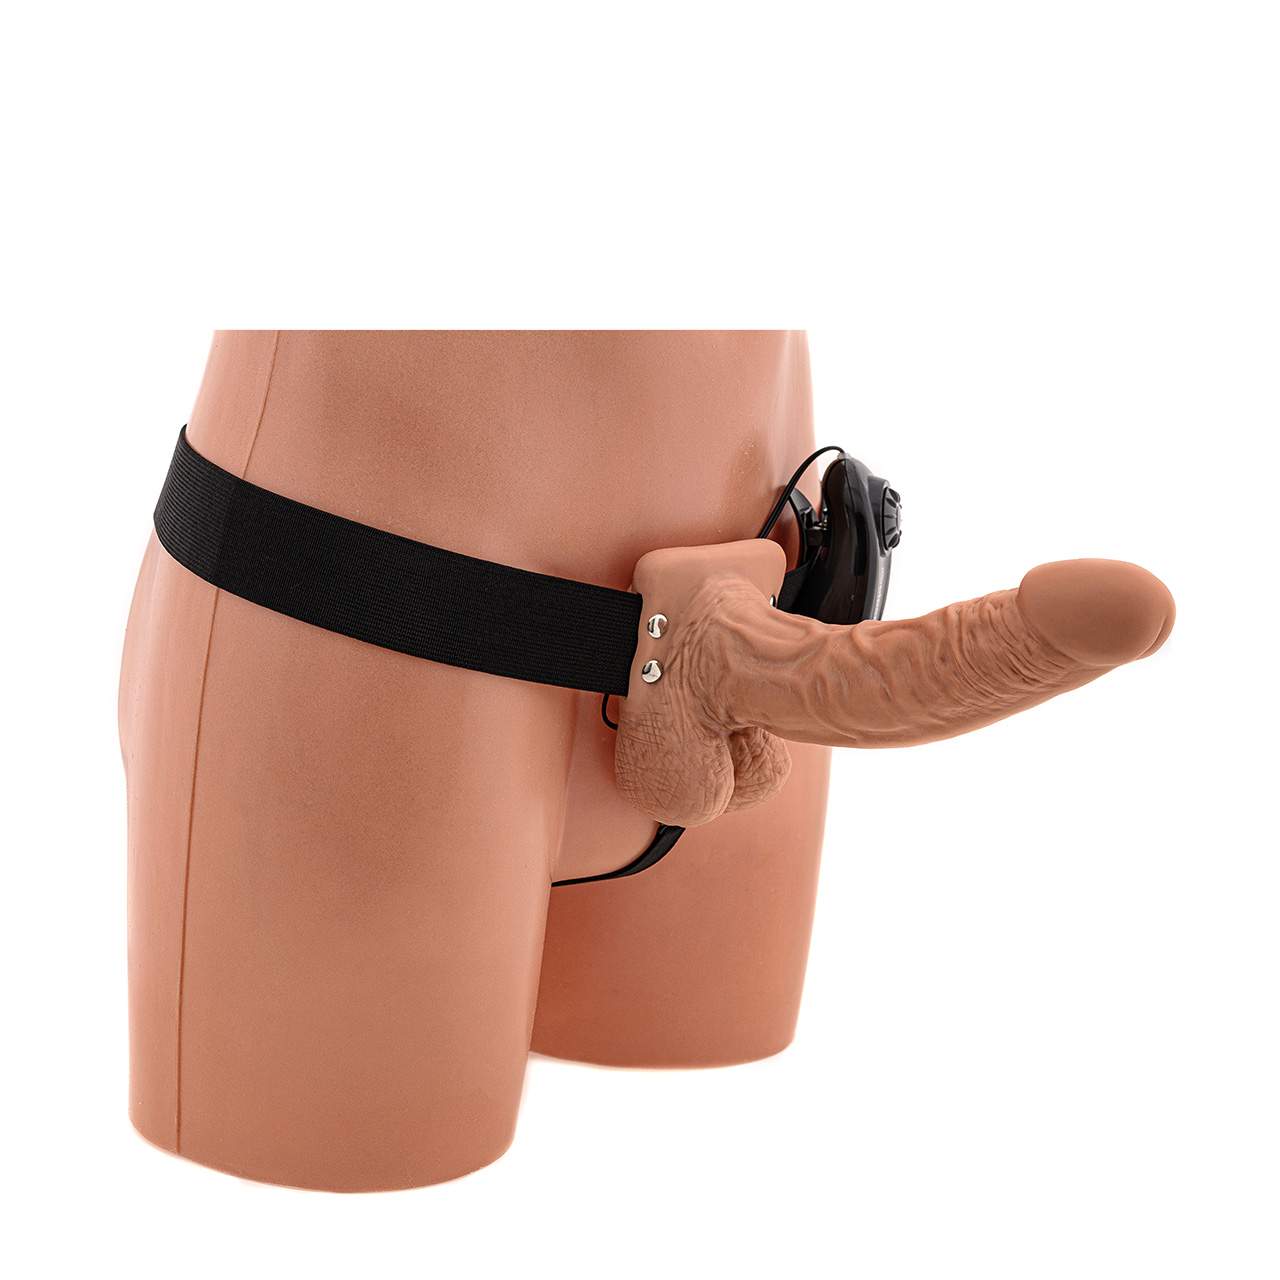 Realistyczna cielista proteza penisa strapon z wibracjami – 19 cm